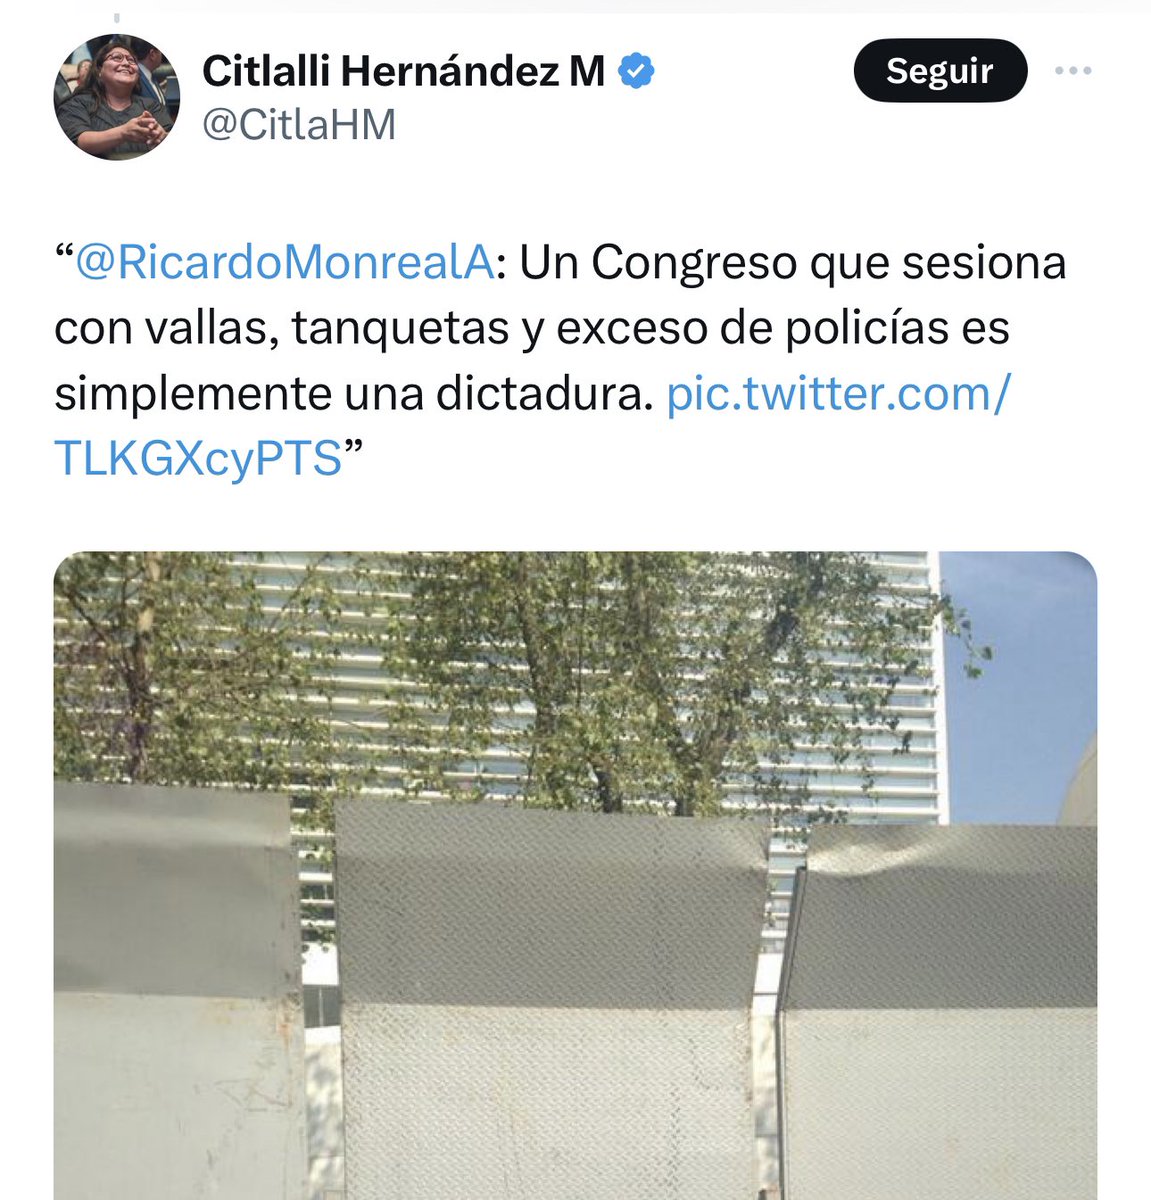 @CitlaHM Morena llegó al poder en democracia pero desde el gobierno Morena inició los ataques para debilitar al INE, regresarlo a SEGOB para que Bartlett hiciera lo suyo, ahora con autoritarismo y recursos públicos organizan una elección de Estado, la democracia en México está en riesgo!